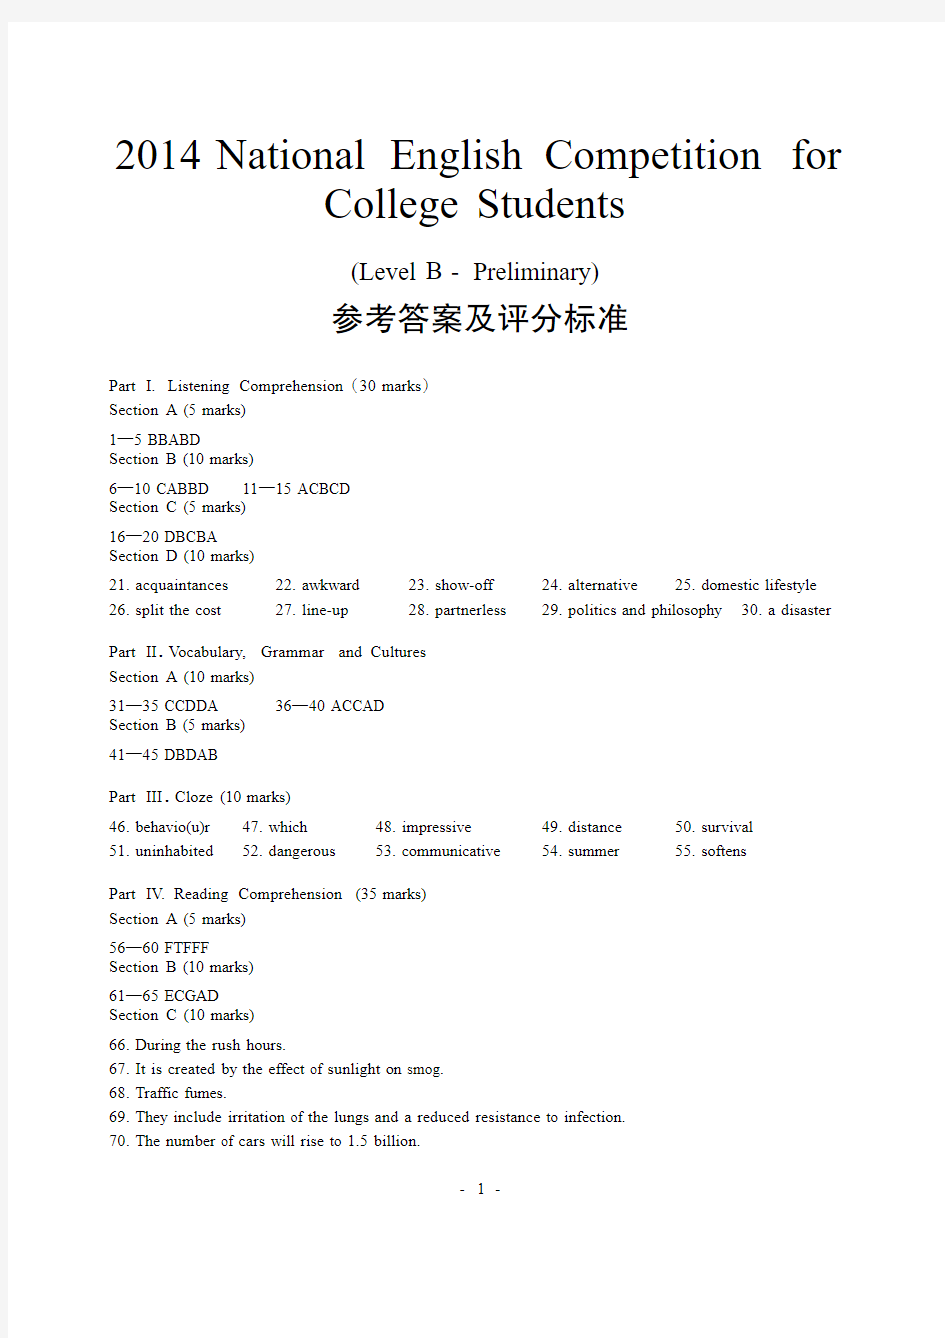 2014全国大学生英语竞赛(NECCS)B类初赛试题答案